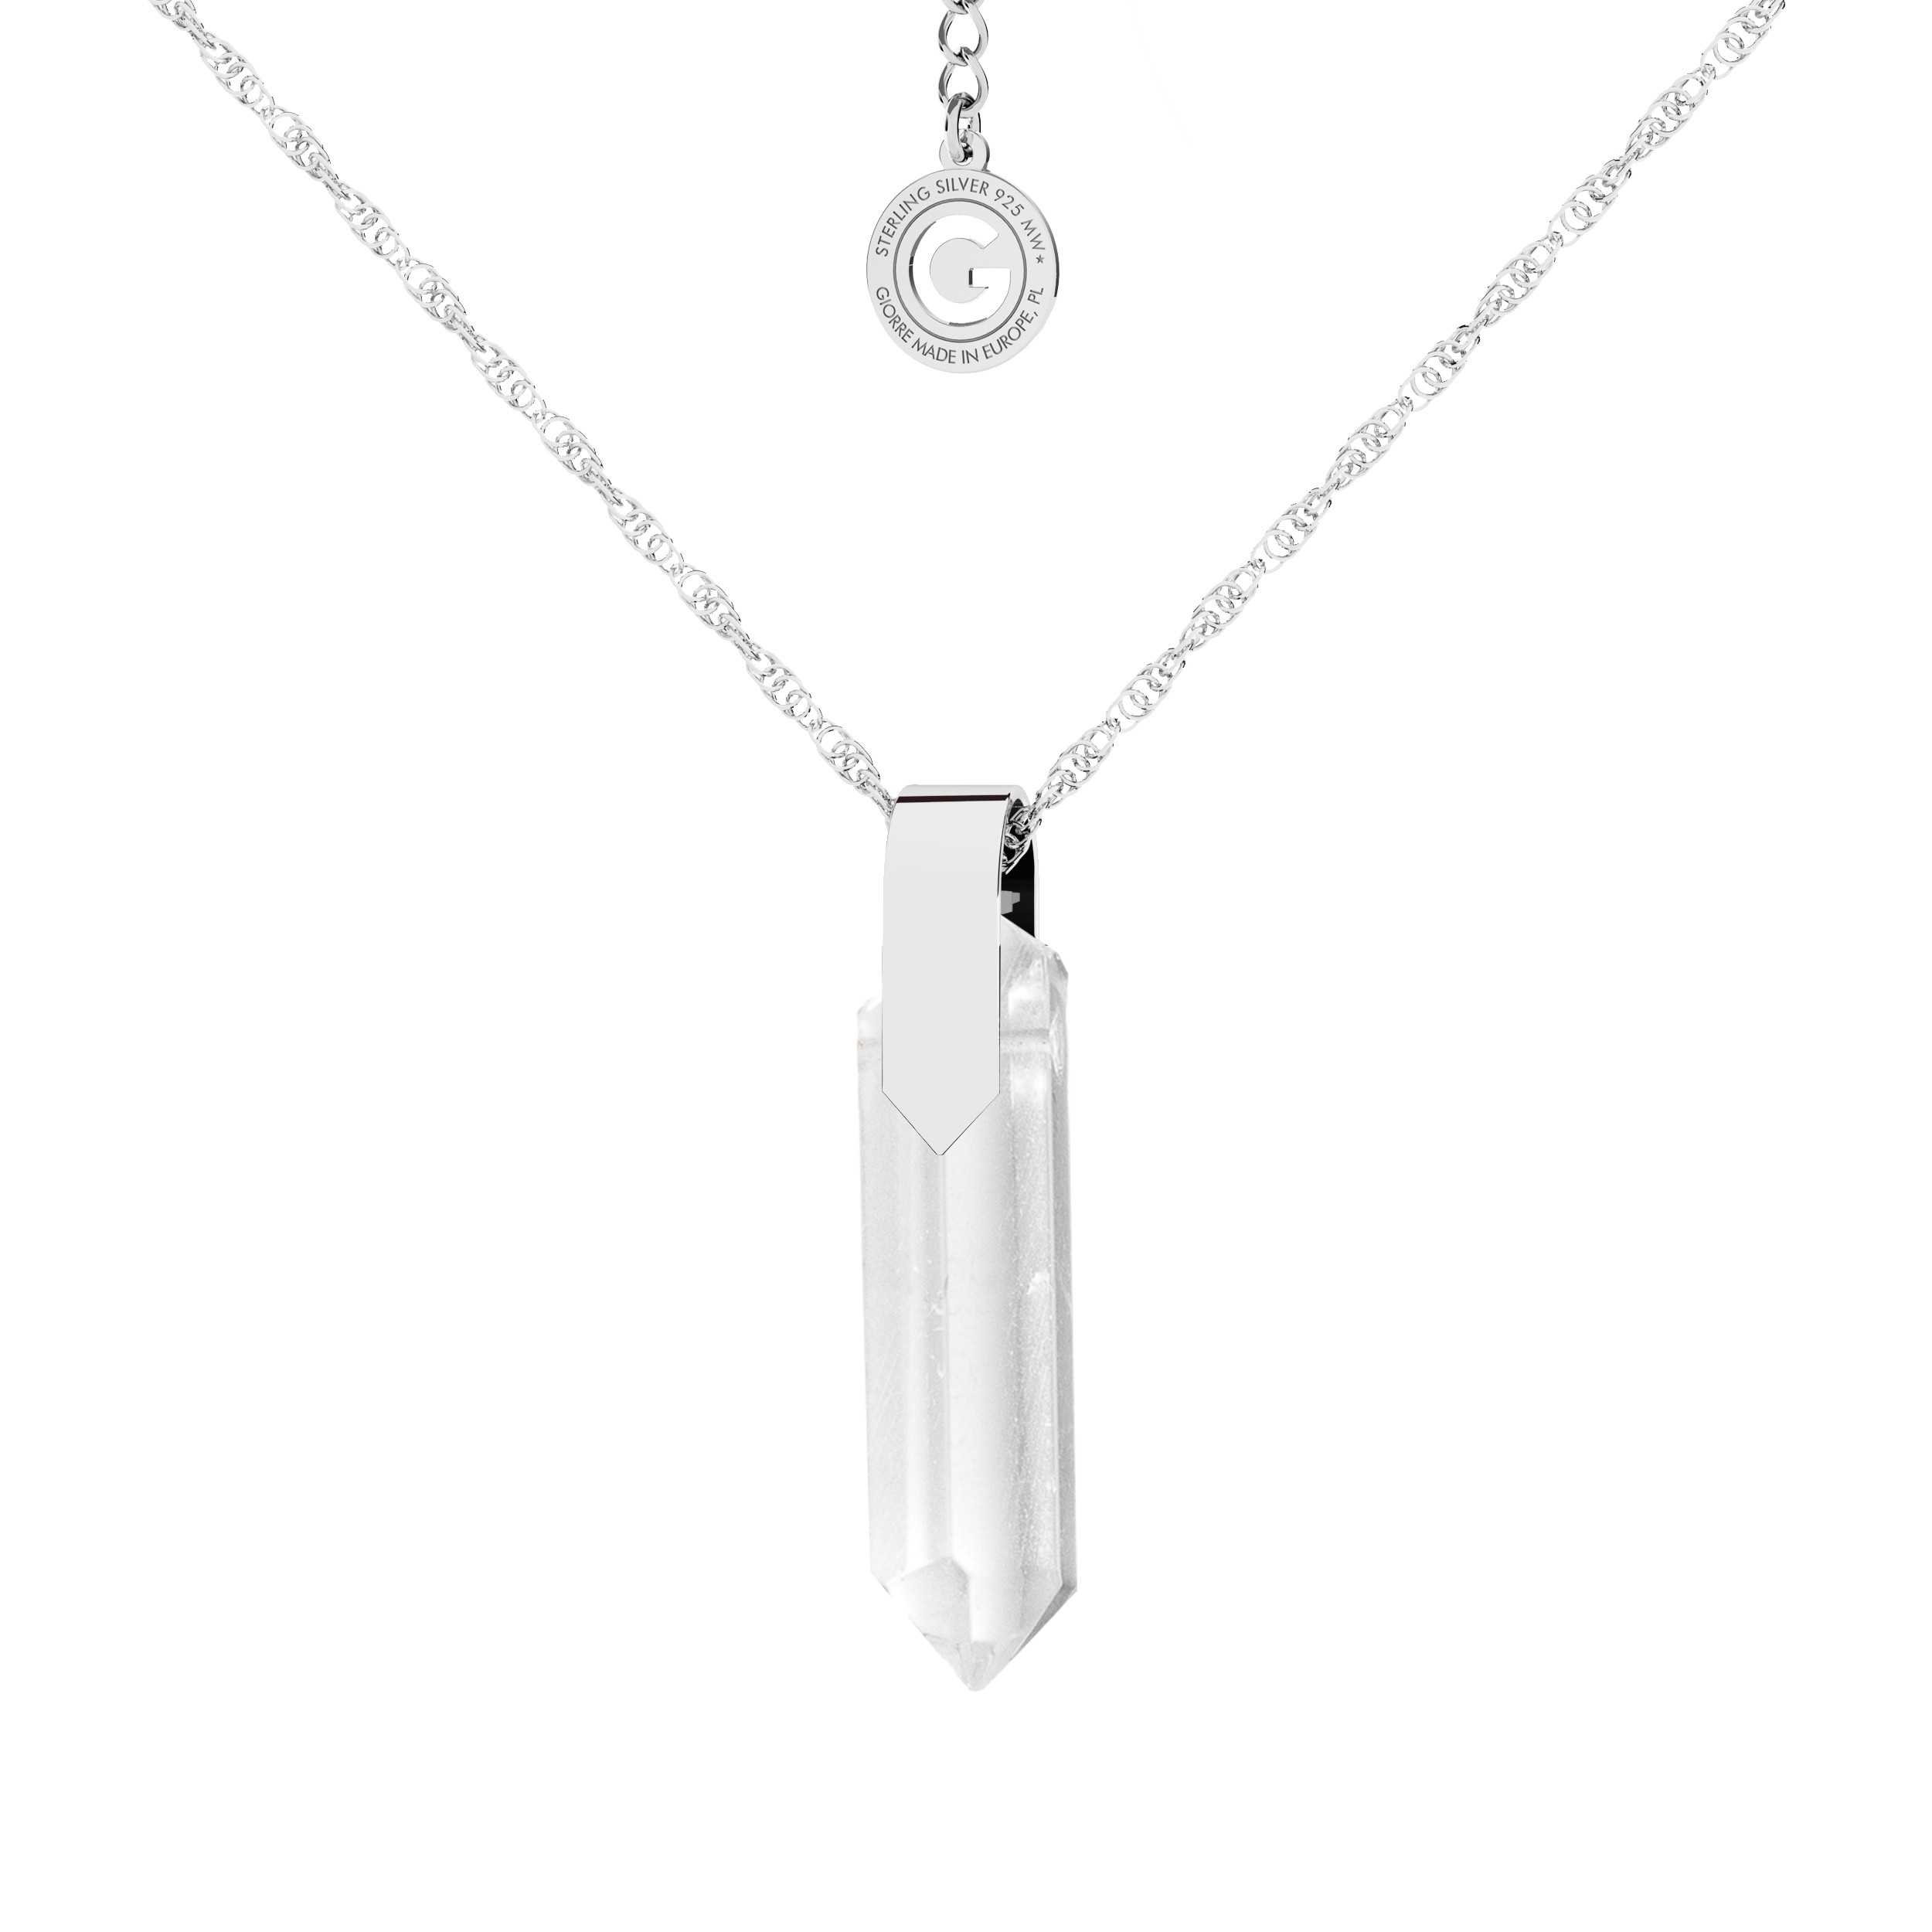 Silver necklace, GAVBARI icicle pendant, 925 silver